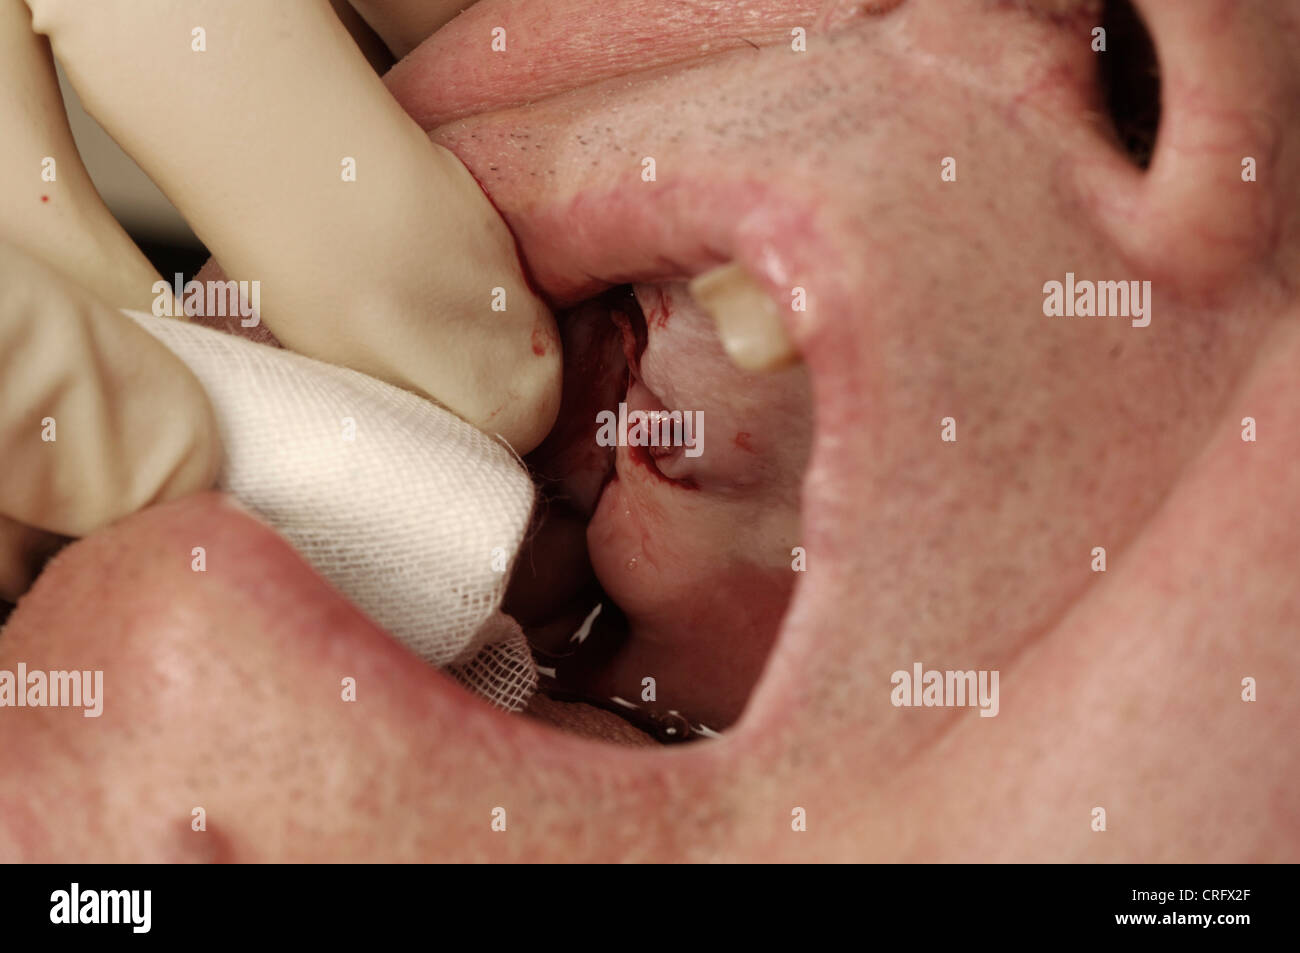 Un dentiste nettoie une purge de la gomme avec une petite gaze après une extraction dentaire. Banque D'Images